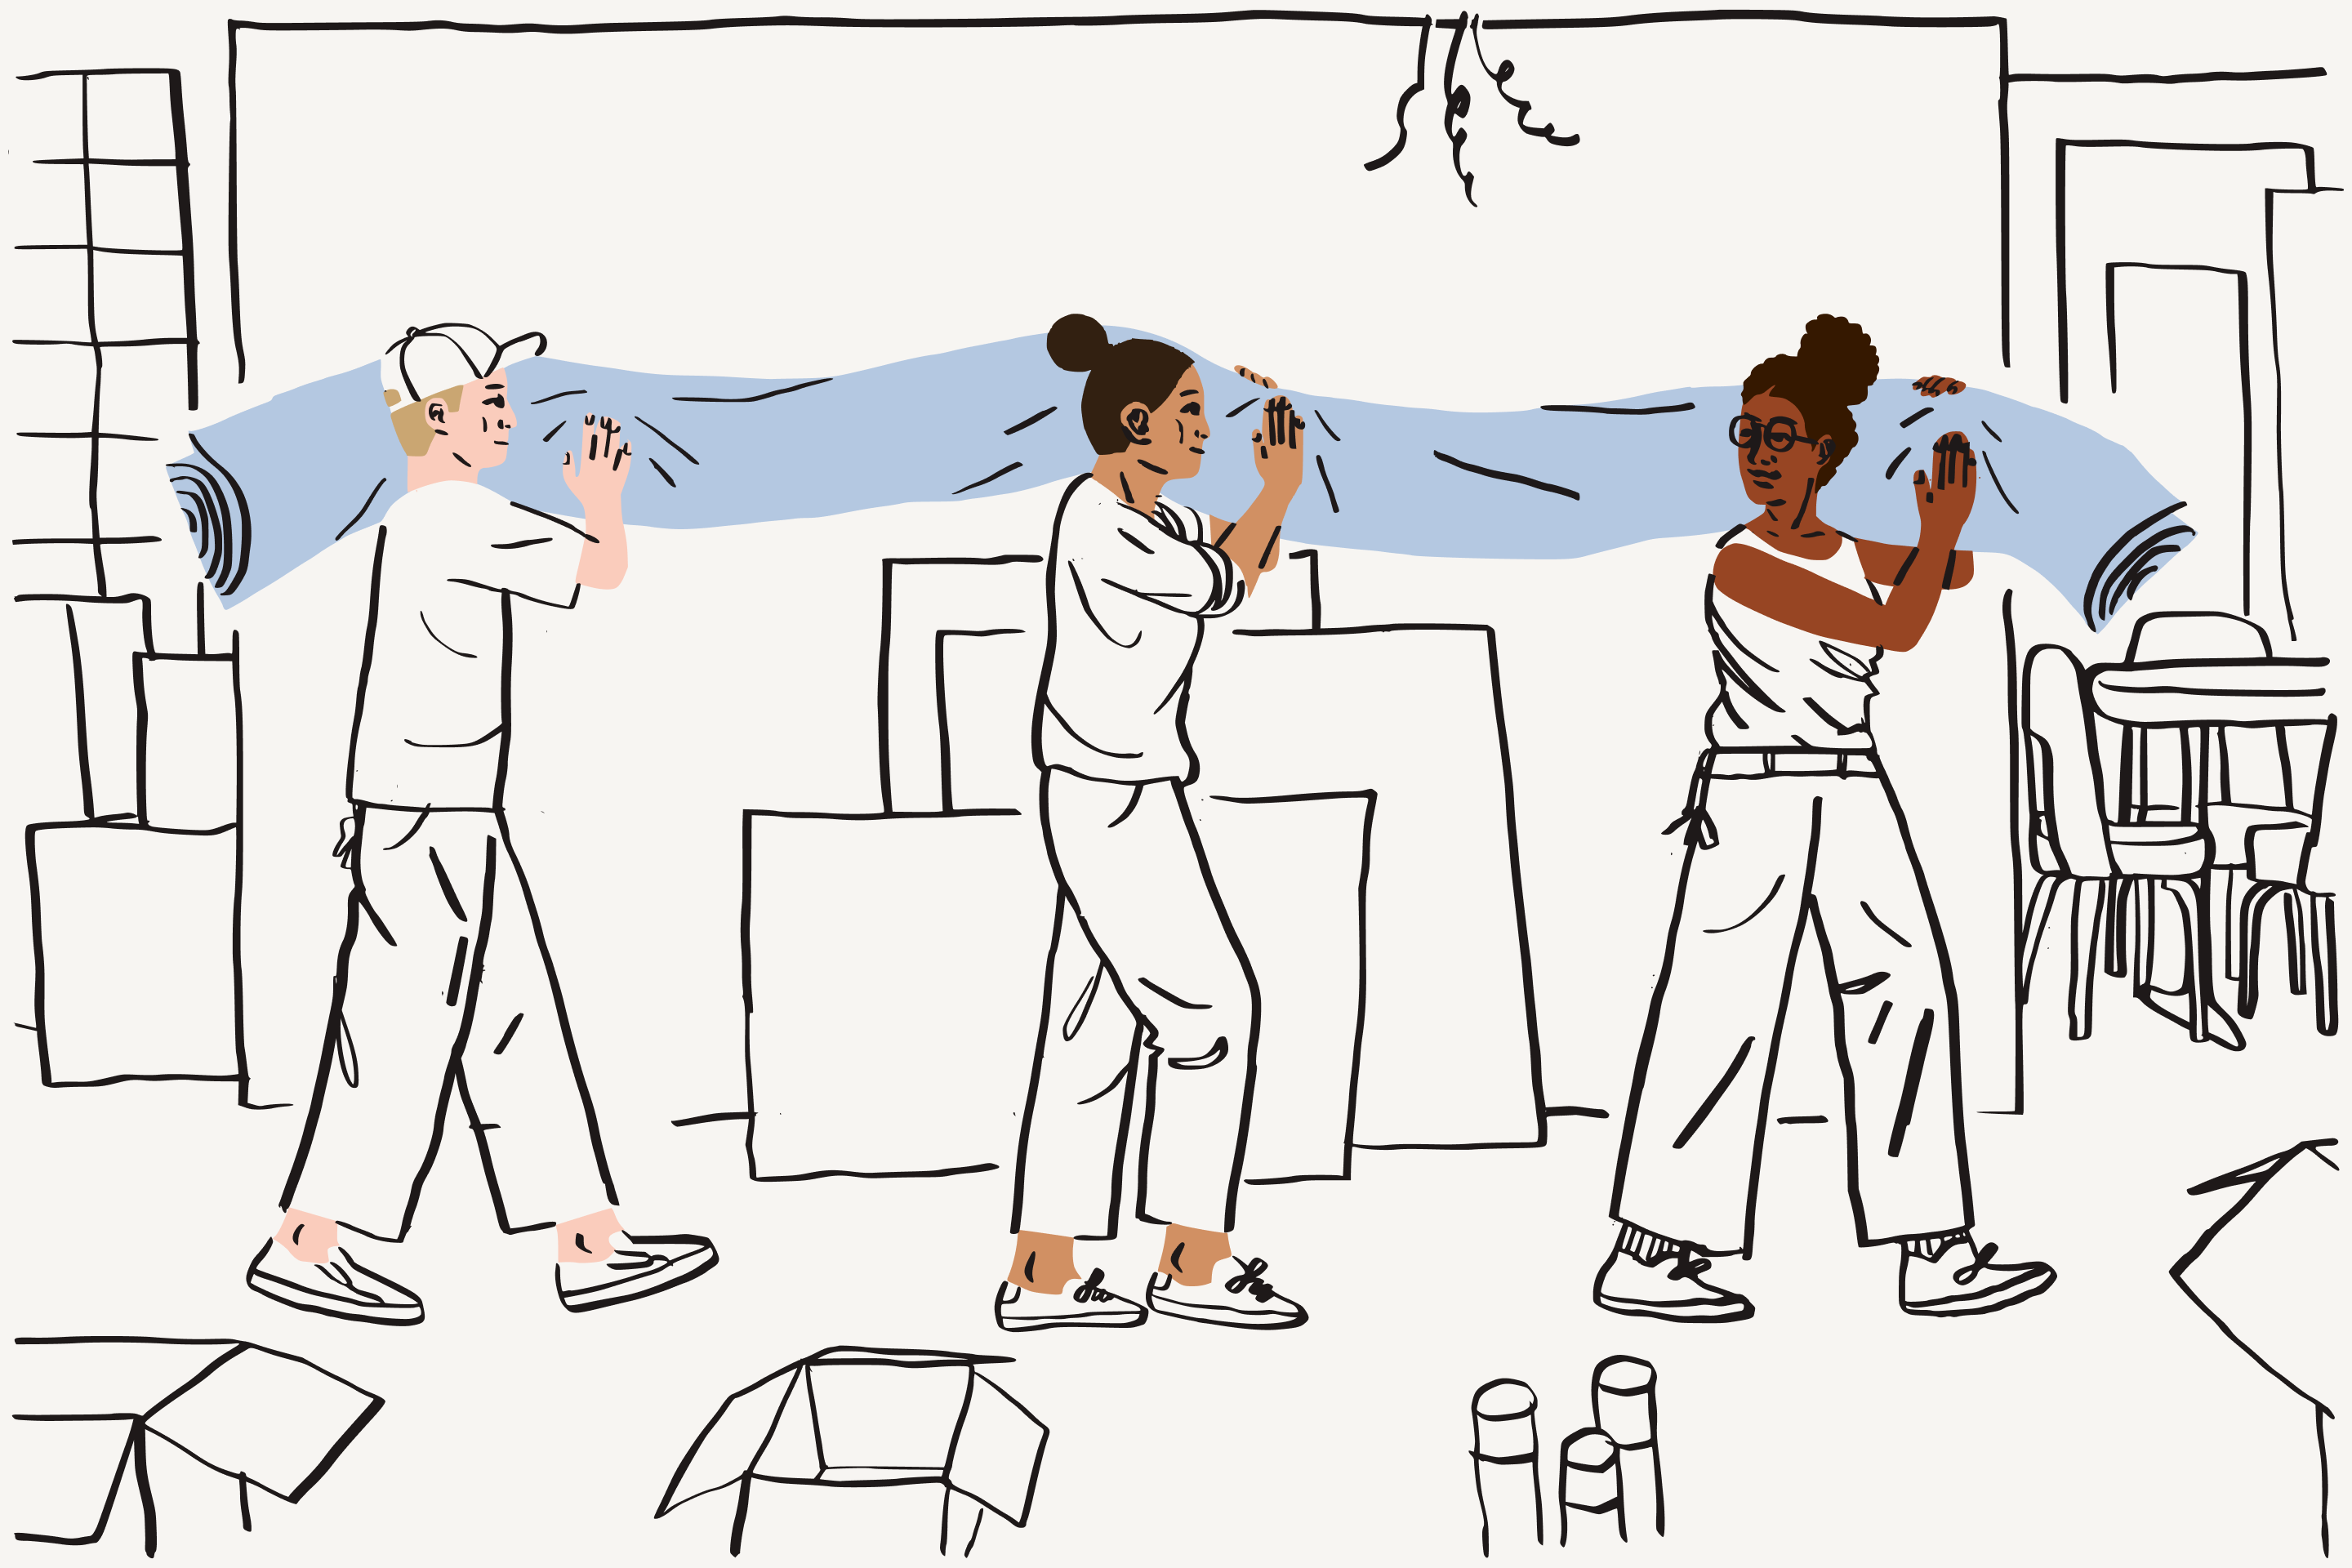 Ilustracja pokazująca osoby niosące zwinięty dywan – mężczyznę i dwie kobiety